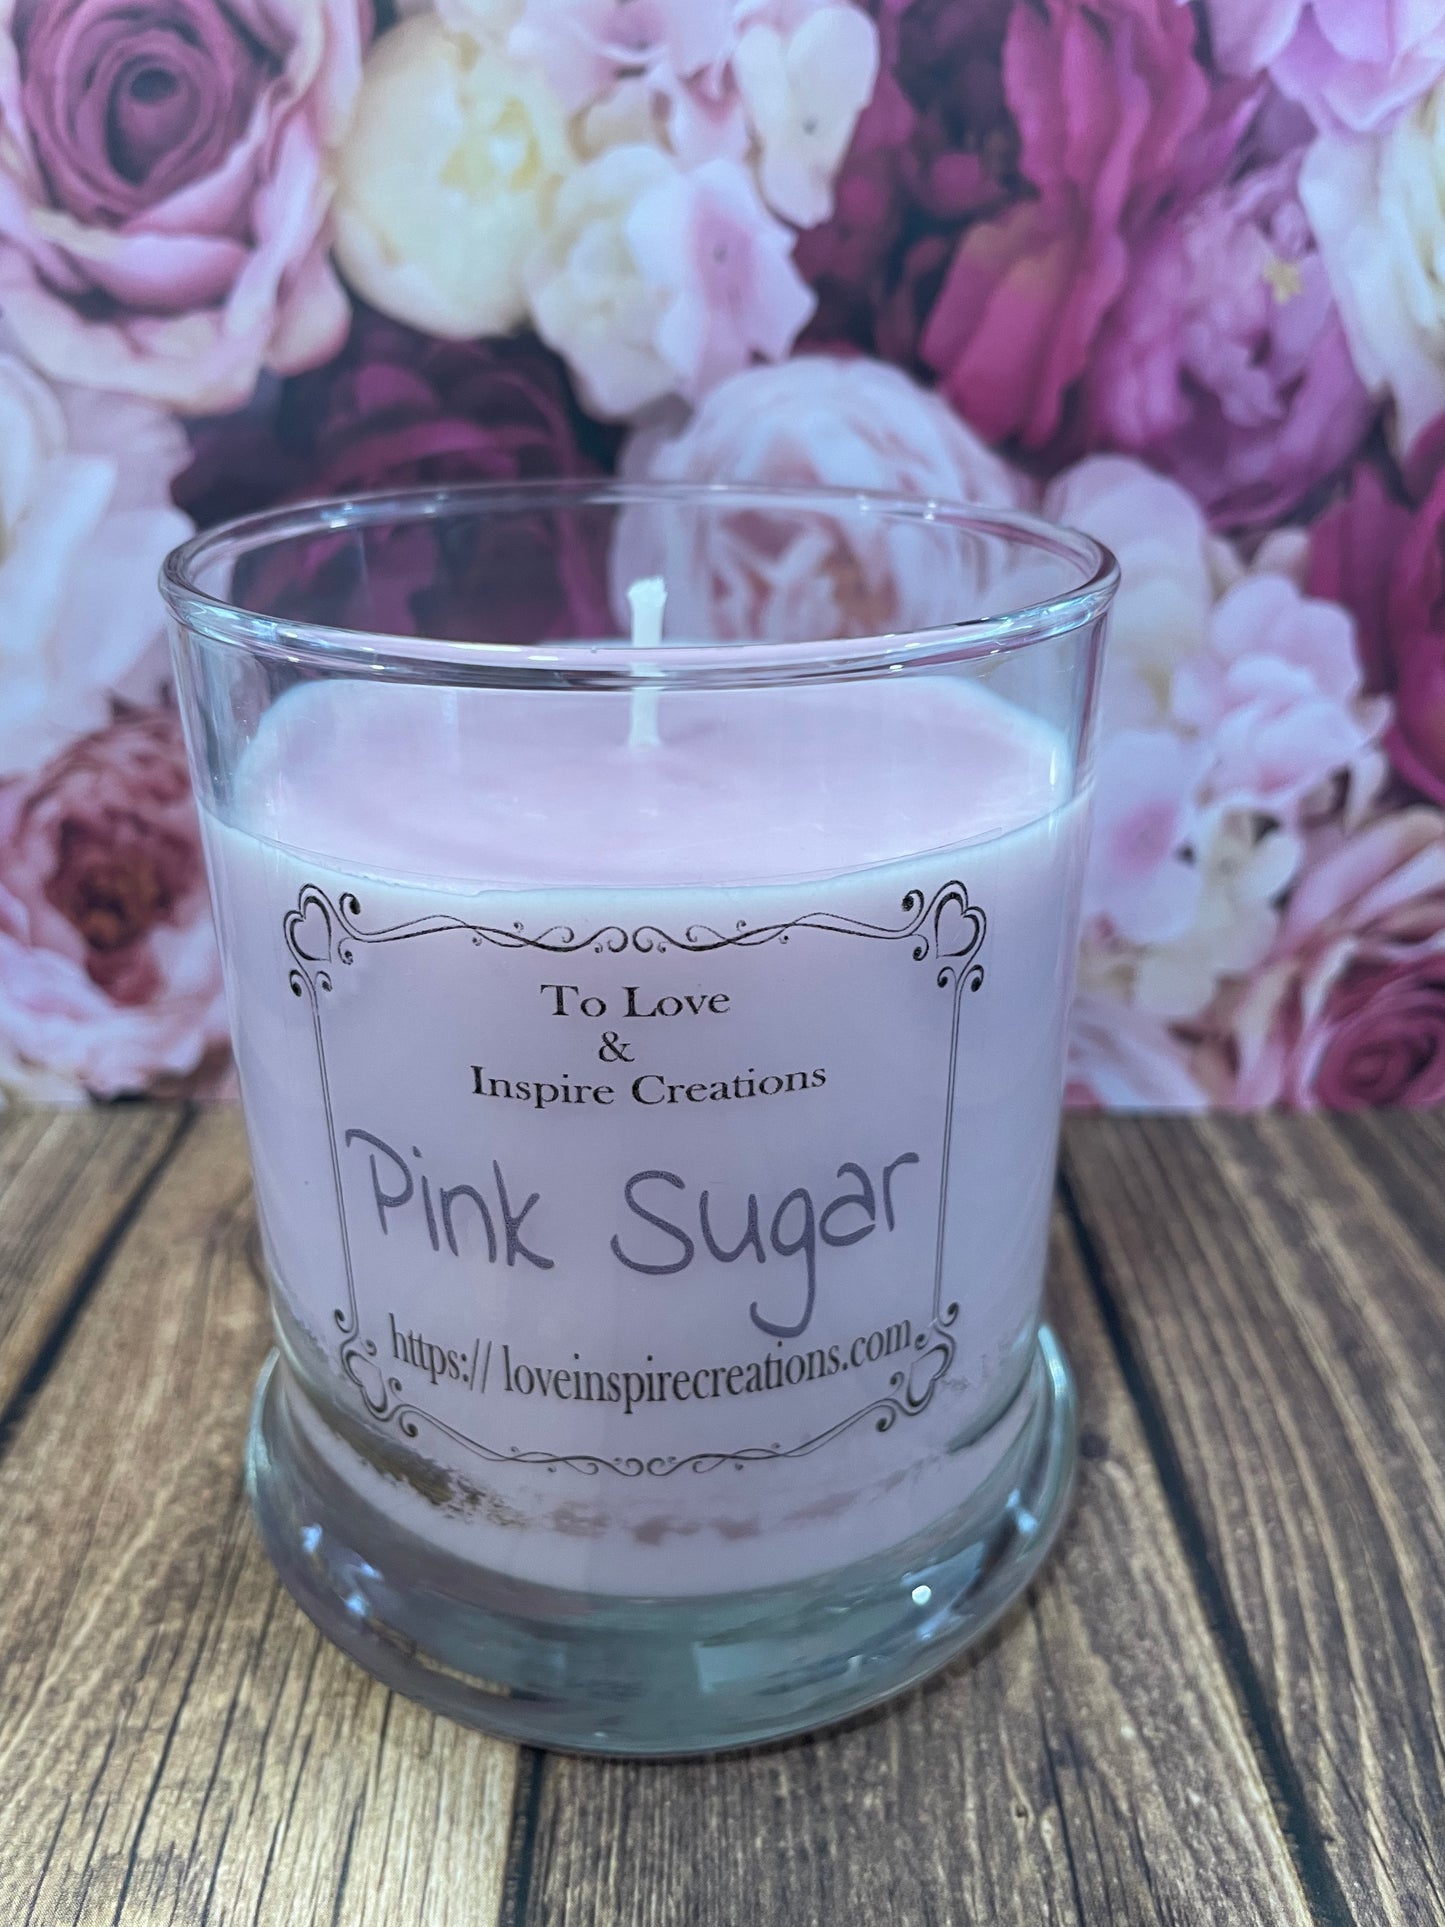 Round pink sugar candle